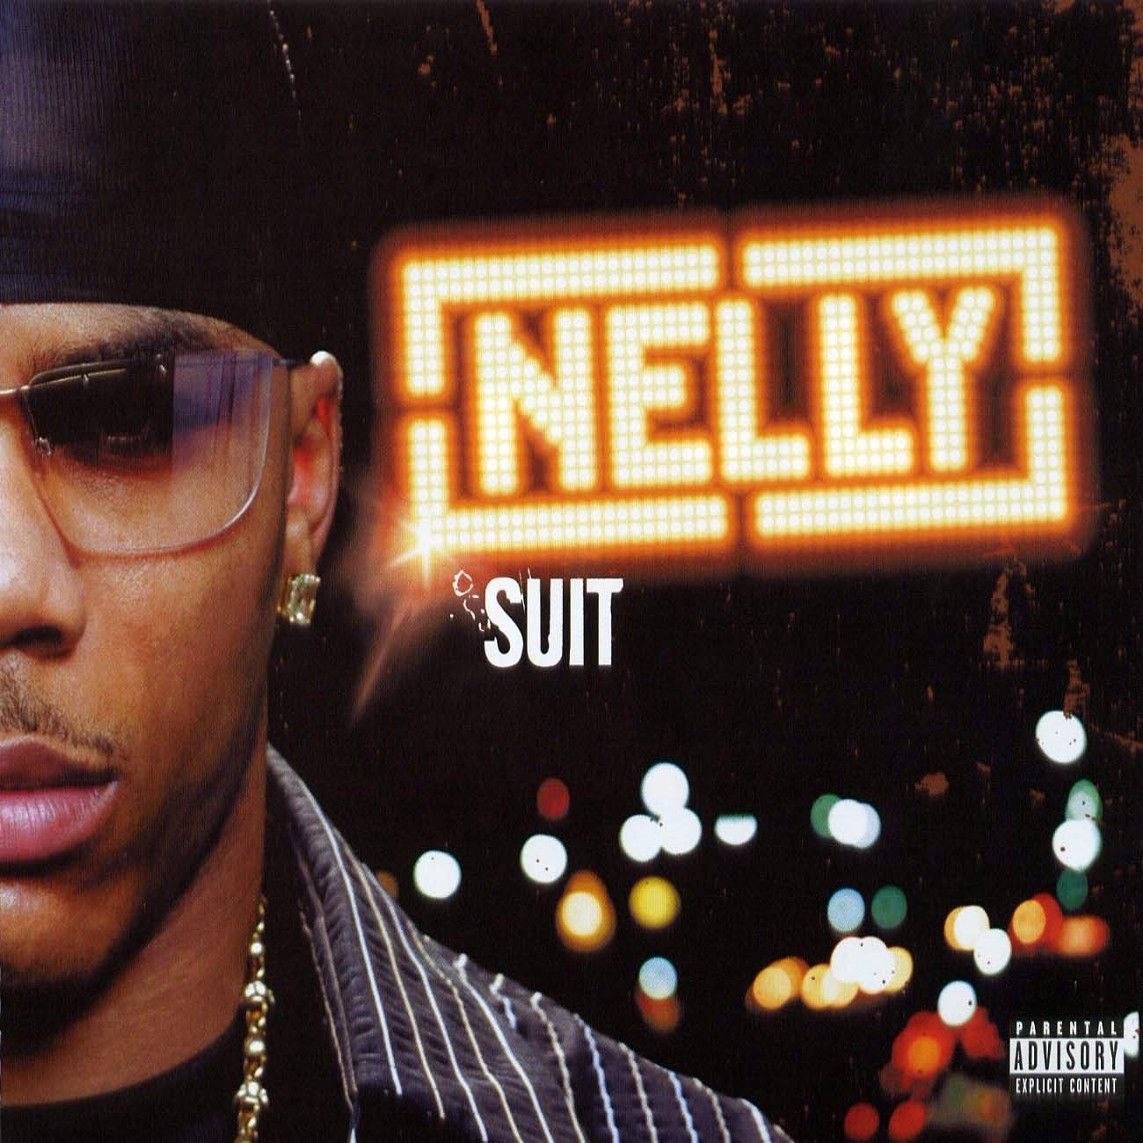 Nelly - Suit Album Cover